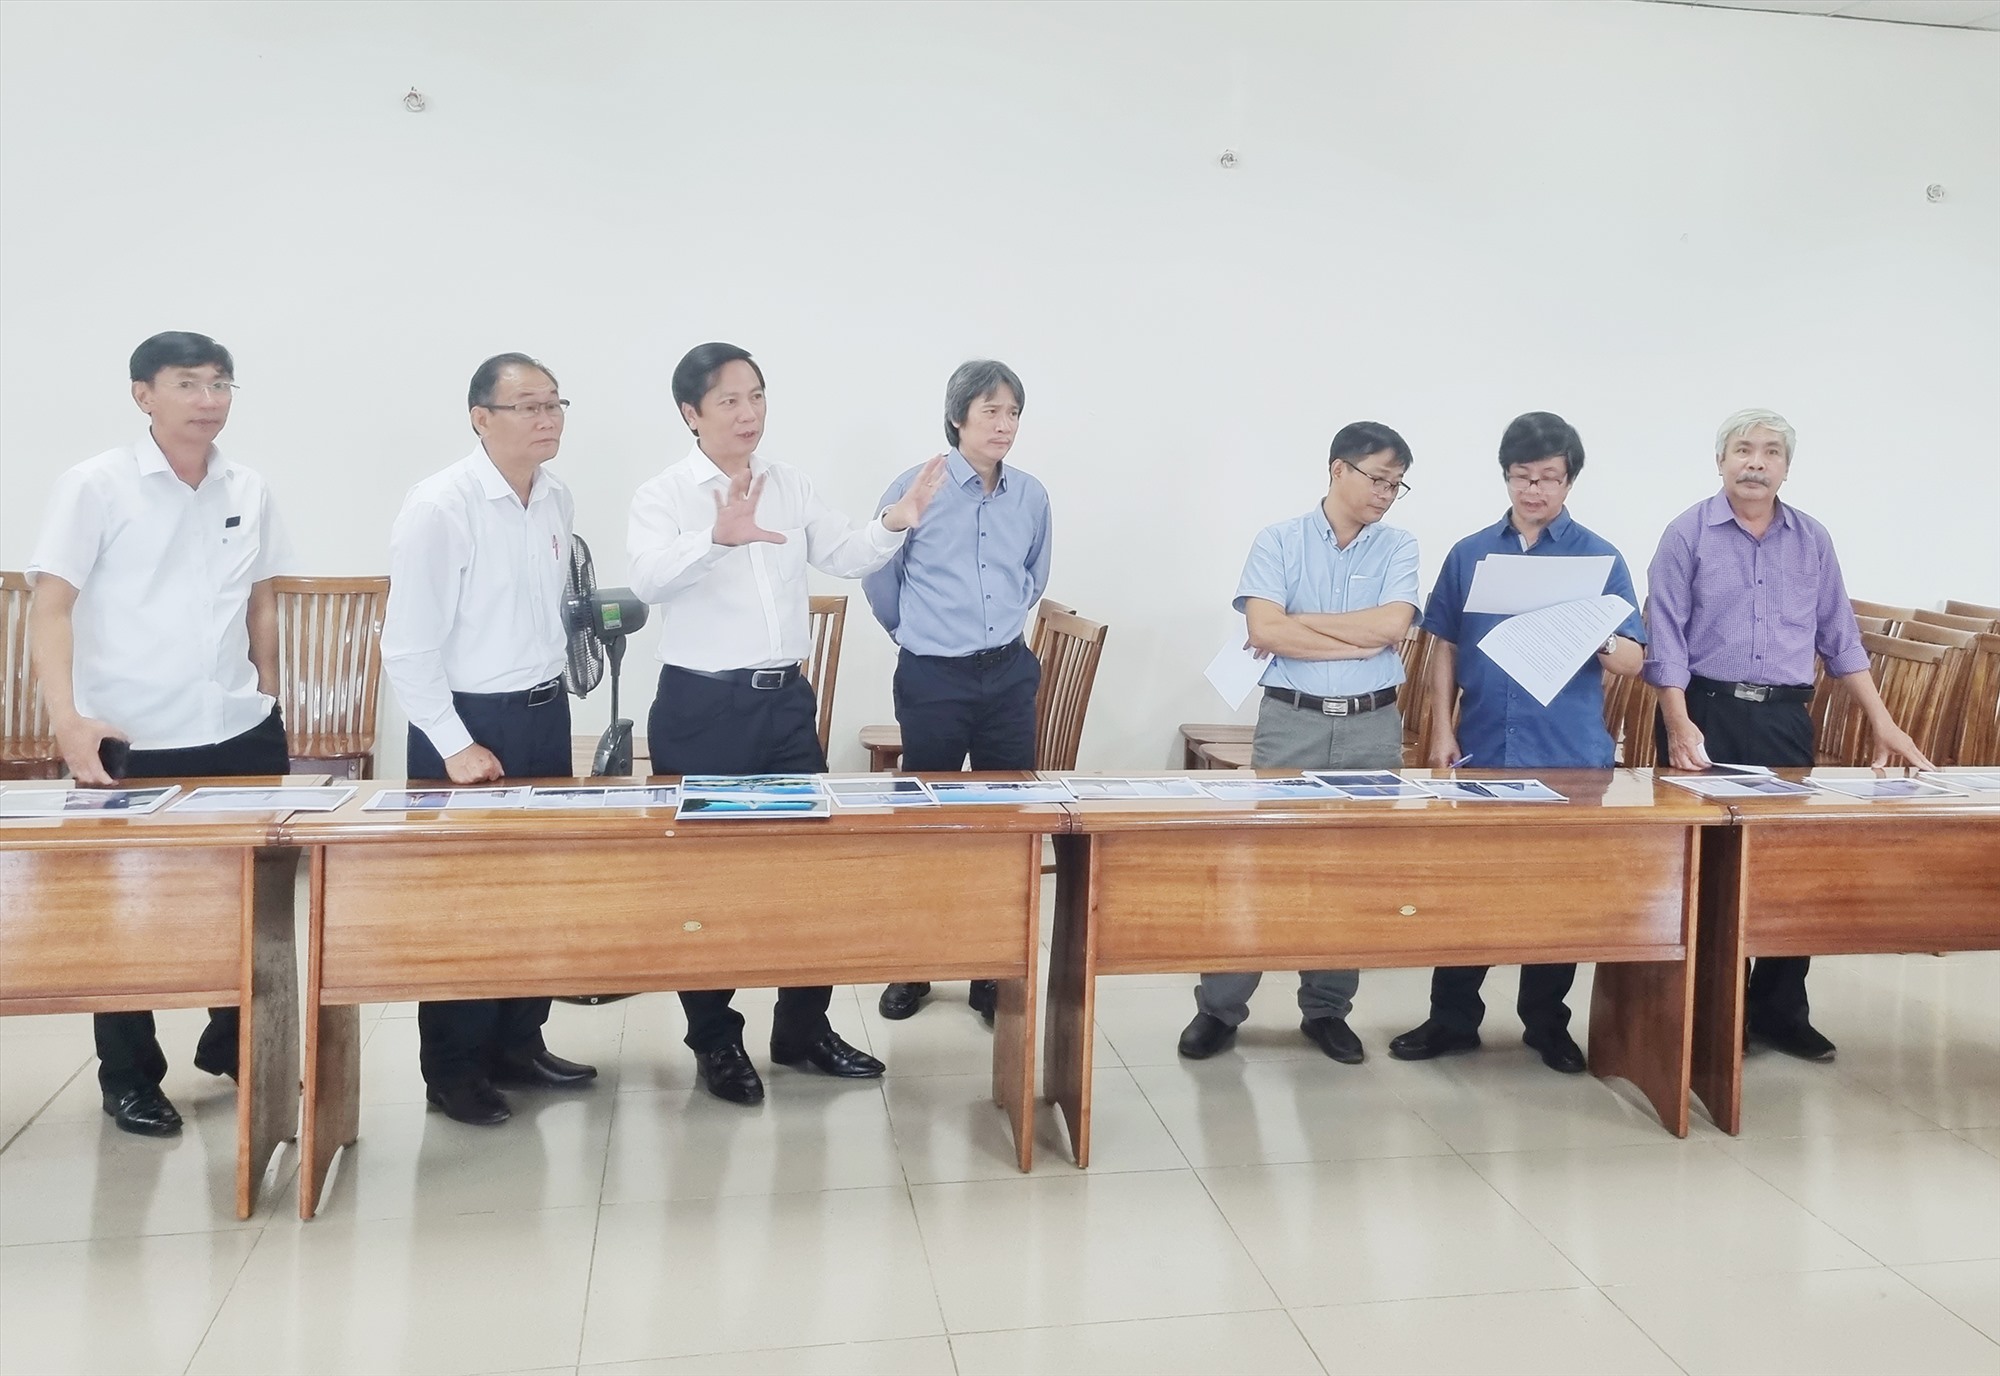 Phó Chủ tịch UBND tỉnh Hoàng Nam trao đổi với các thành viên của Hội đồng nghệ thuật tại buổi chấm thi vòng chung khảo - Ảnh: Tú Linh